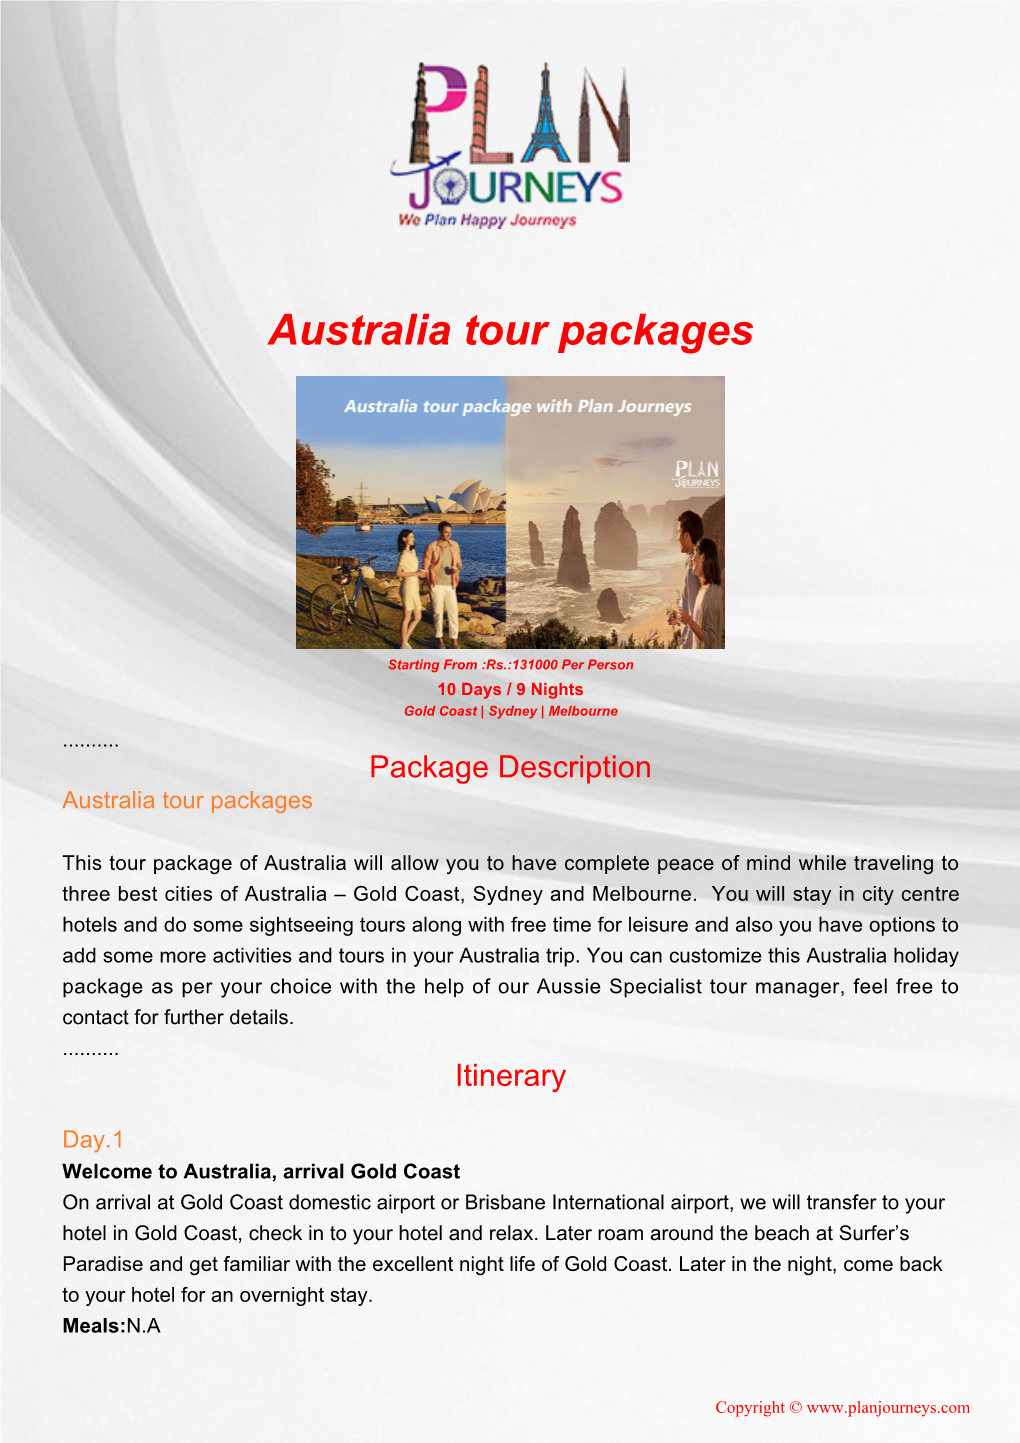 Australia Tour Packages